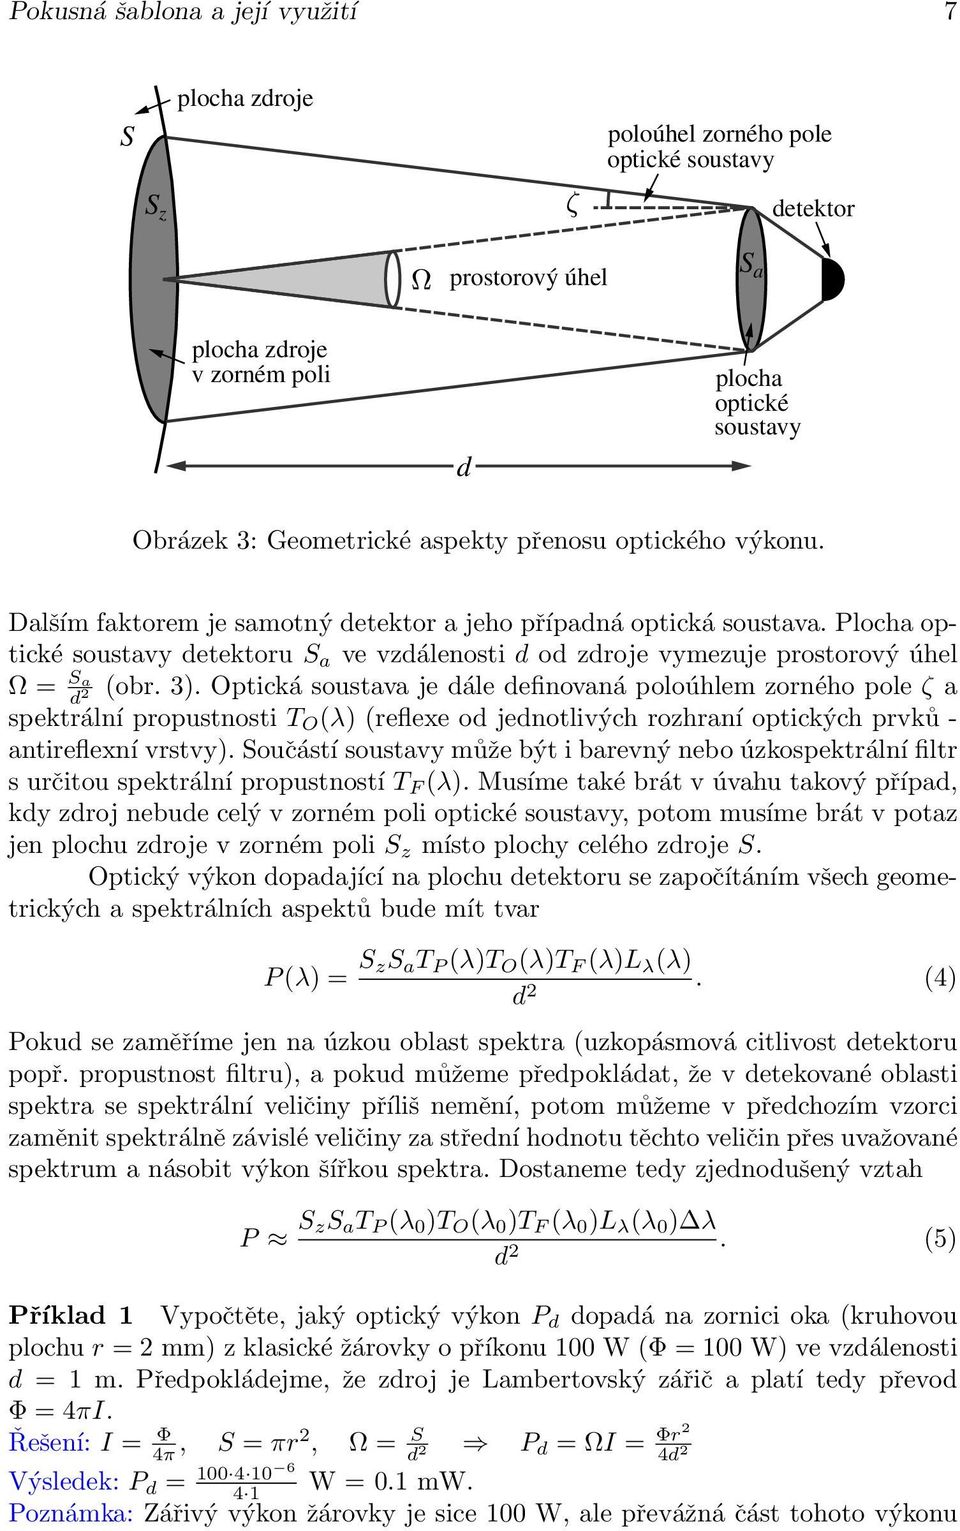 Plocha optické soustavy detektoru S a ve vzdálenosti d od zdroje vymezuje prostorový úhel Ω = S a d (obr. 3).